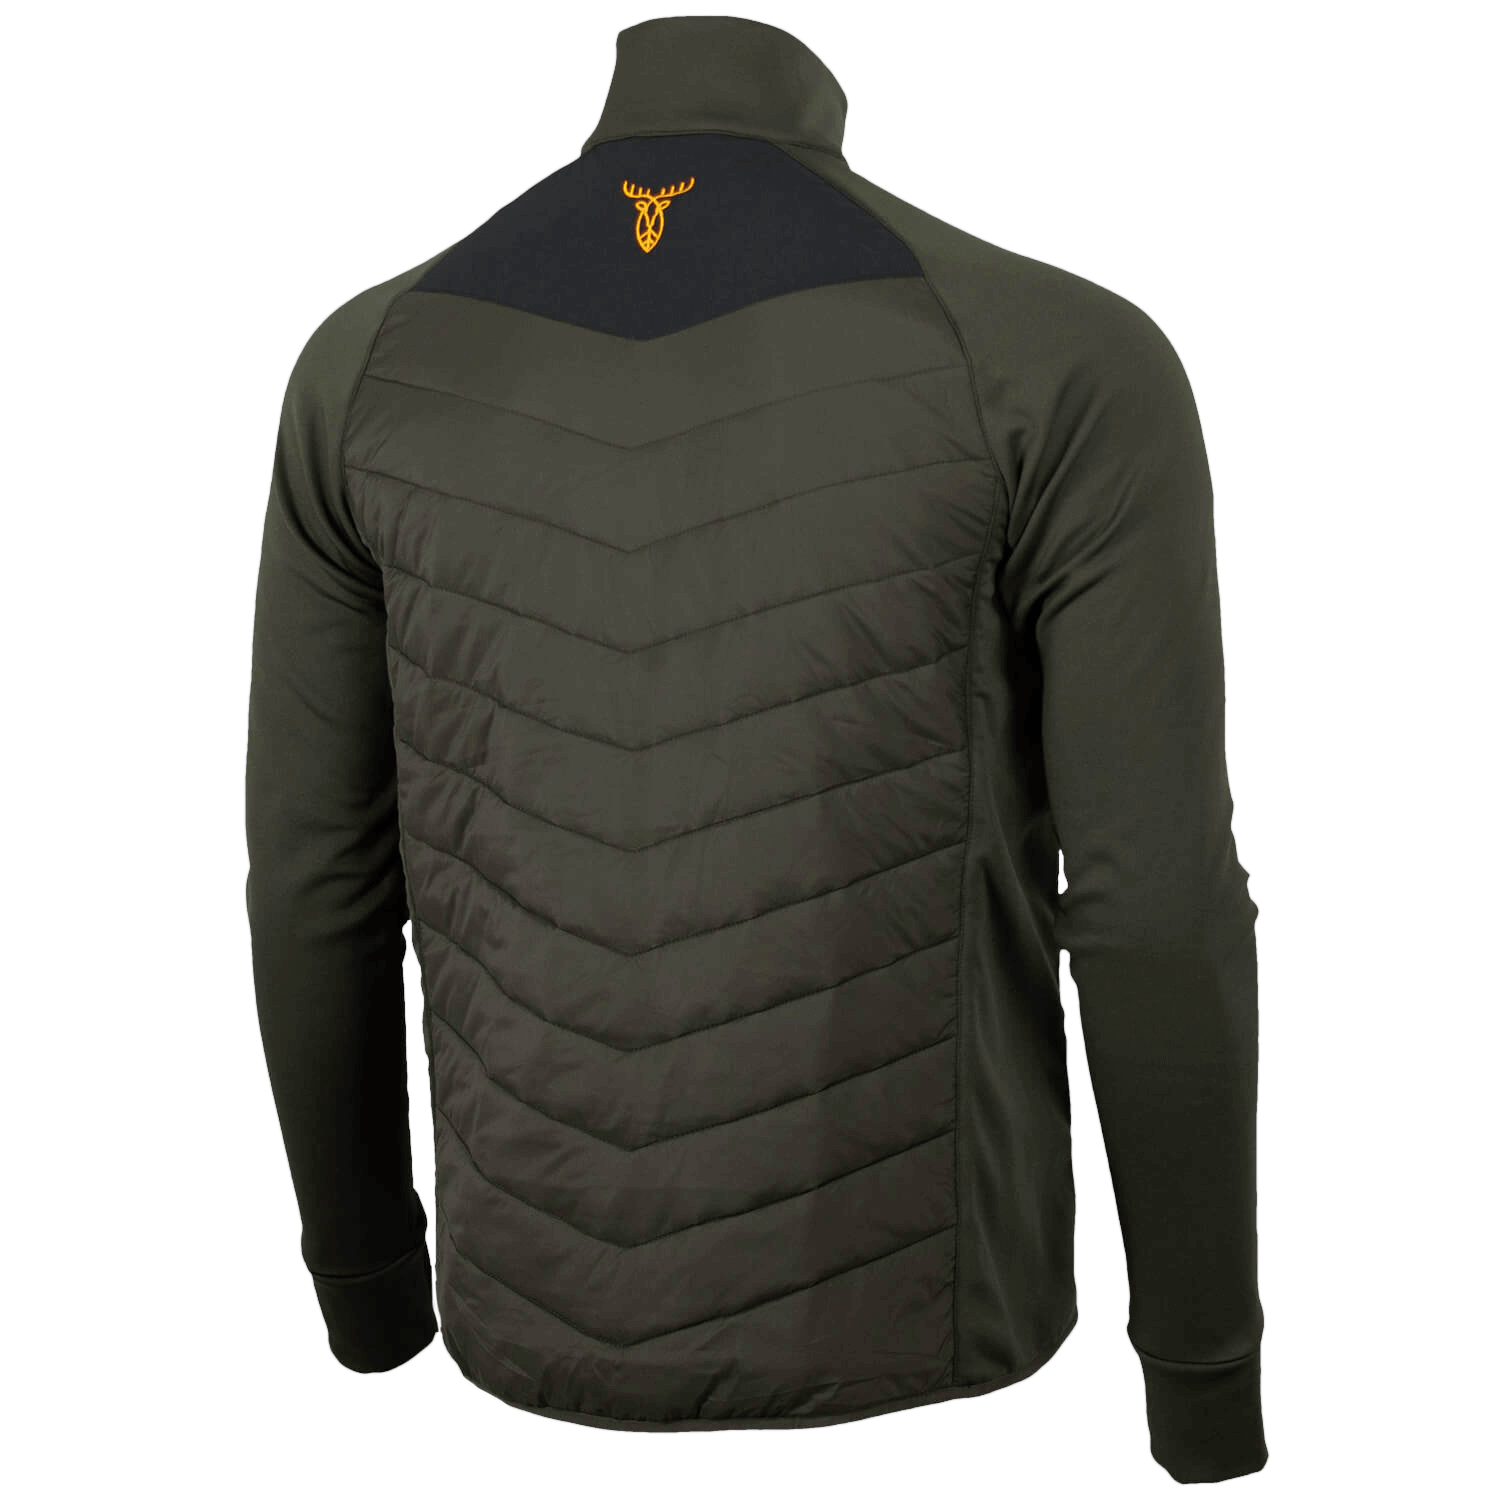 Pirscher Gear Hybrid-Fleece Jacket